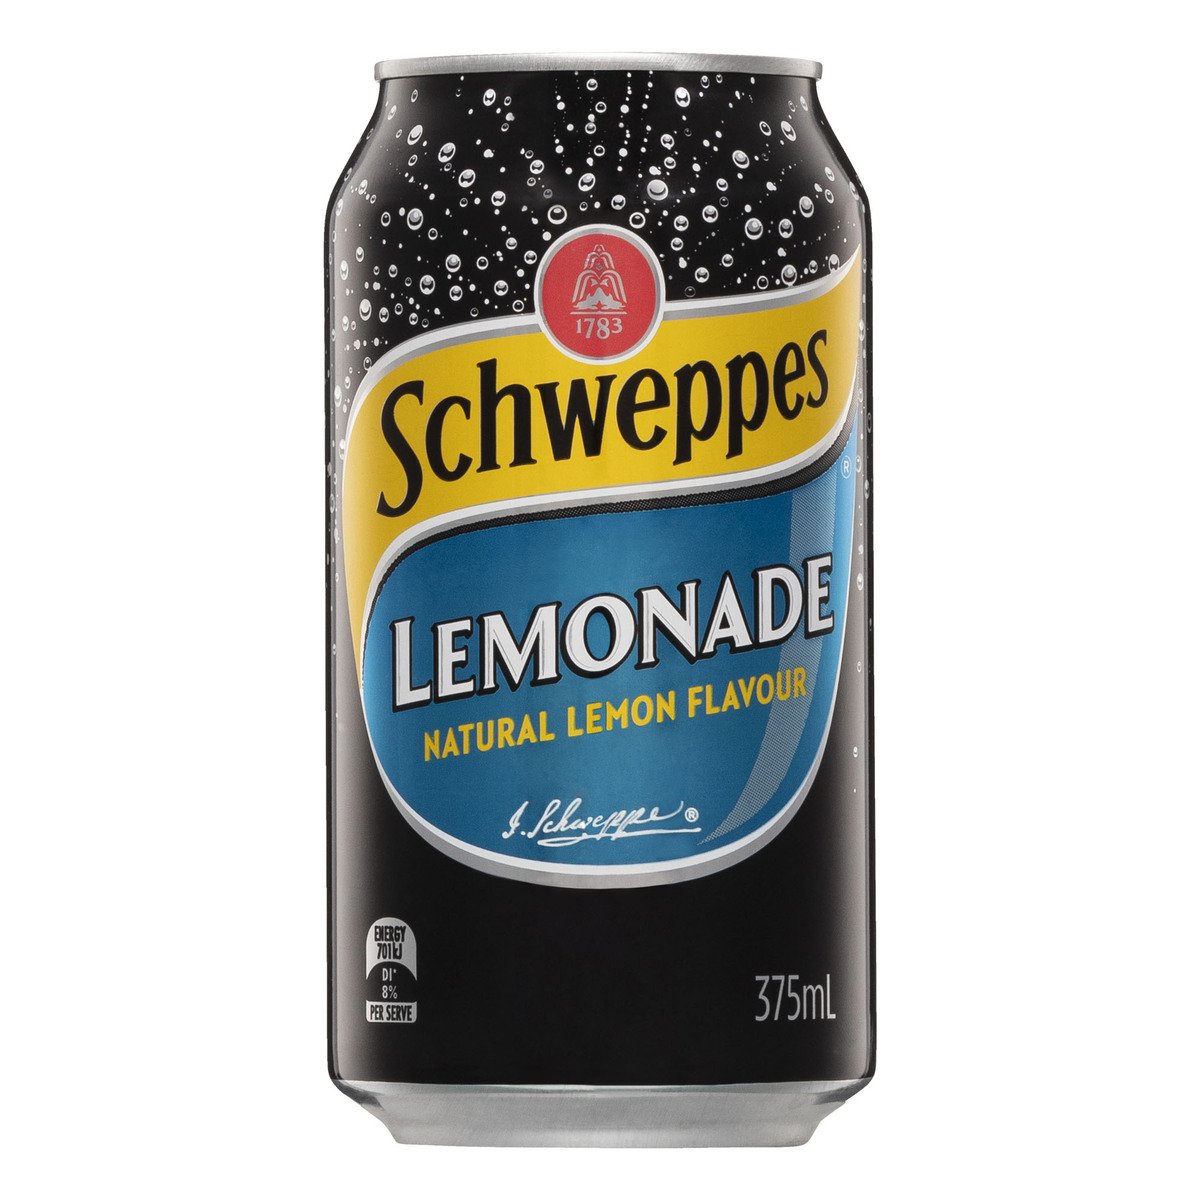 Schweppes Lemonade Natural Lemon Flavour 375ml